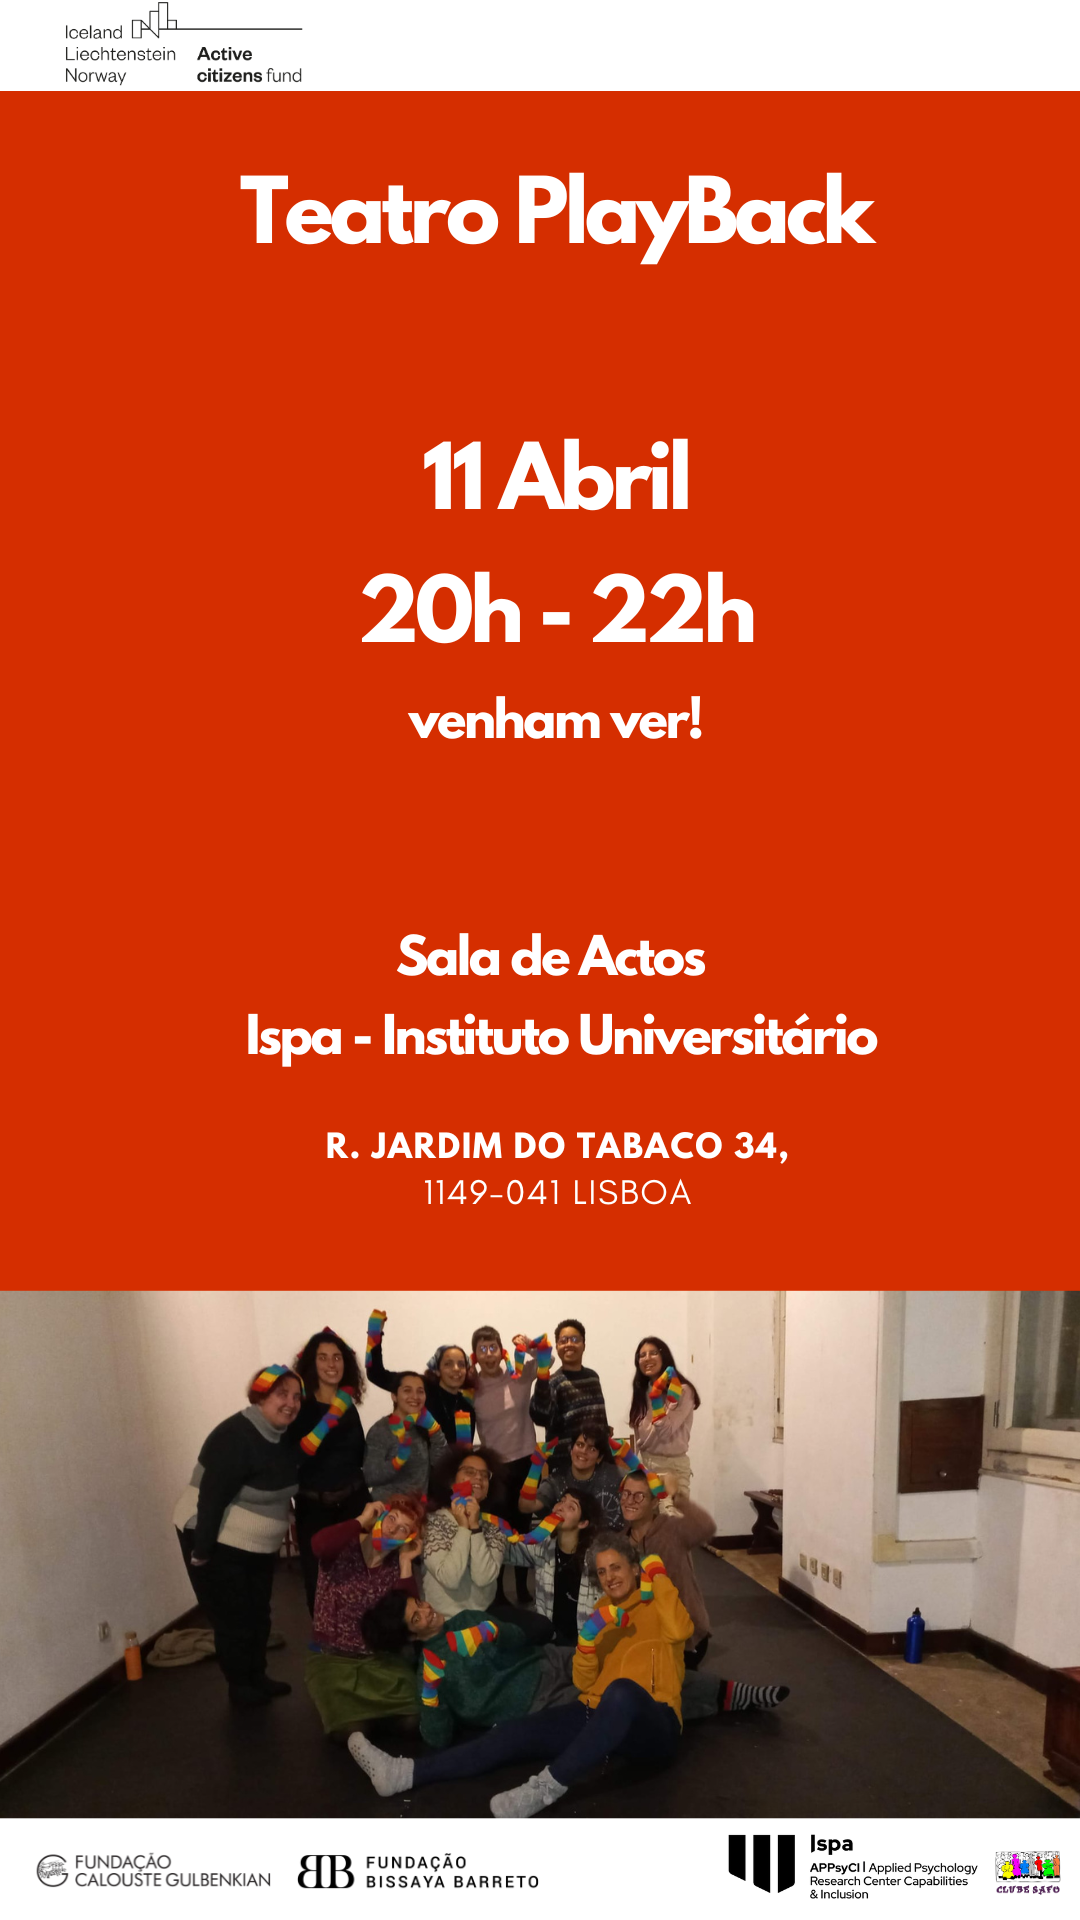 Teatro Playback | Ispa - Instituto Universitário, 11 de Abril, 20h